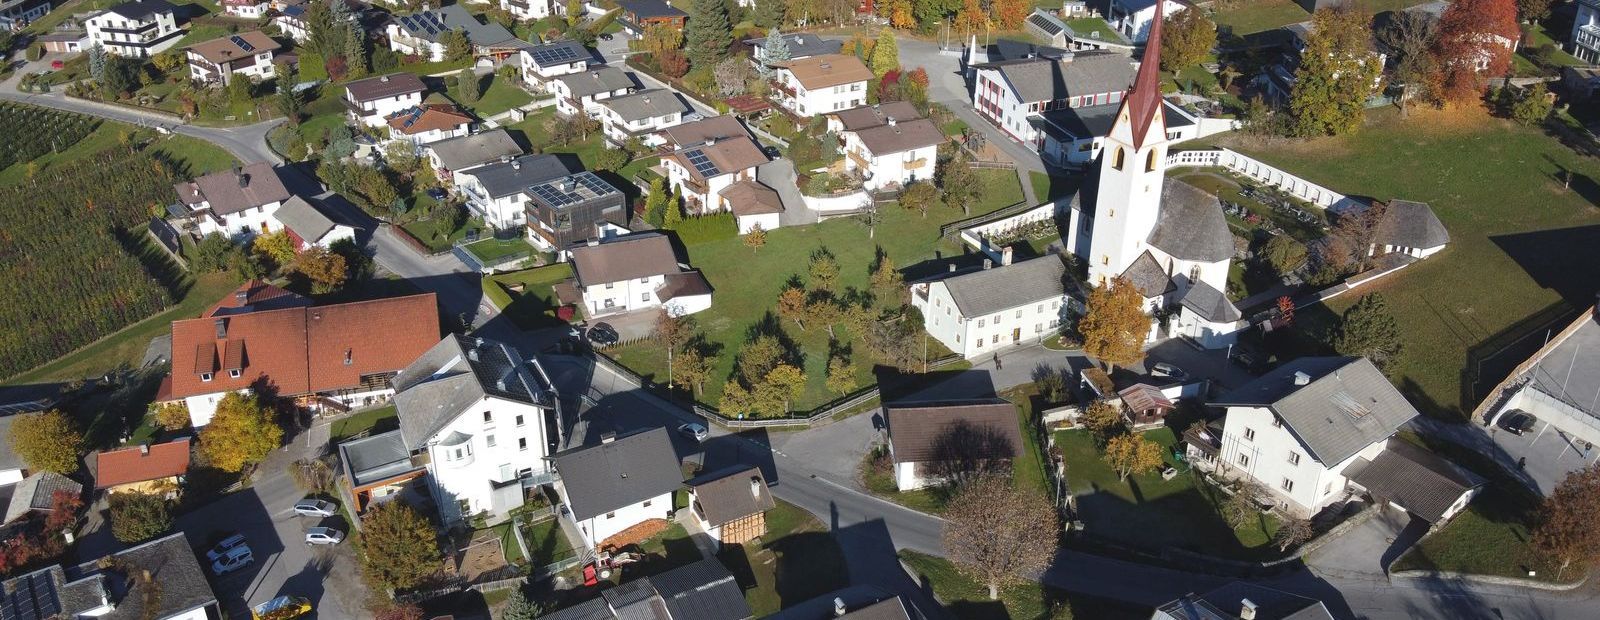 Luftansicht der Gemeinde Gaimberg im Herbst mit der Pfarrkirche im Zentrum des Bildes